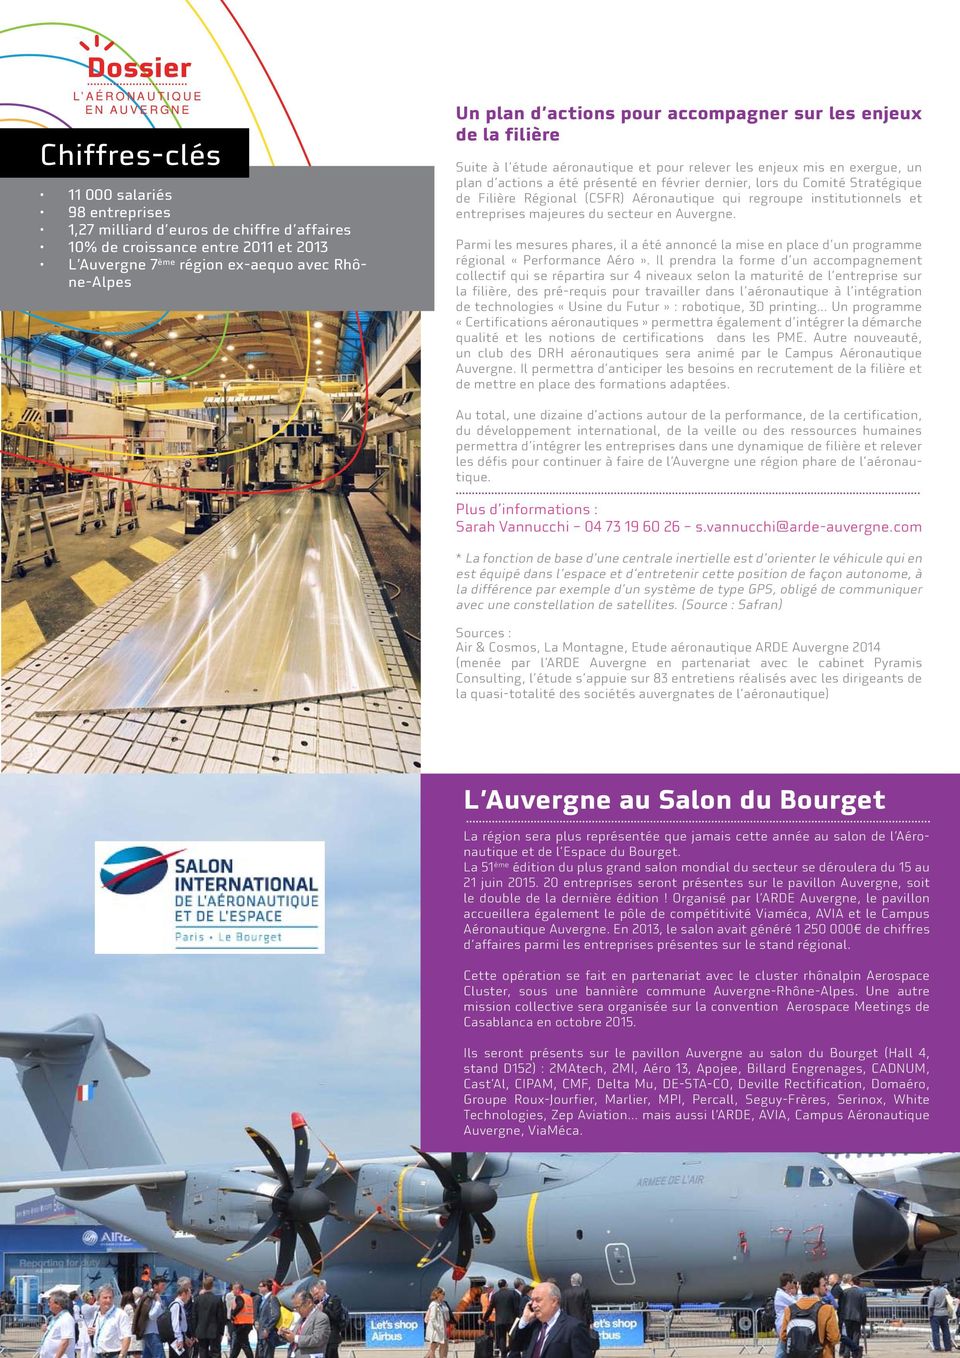 dernier, lors du Comité Stratégique de Filière Régional (CSFR) Aéronautique qui regroupe institutionnels et entreprises majeures du secteur en Auvergne.